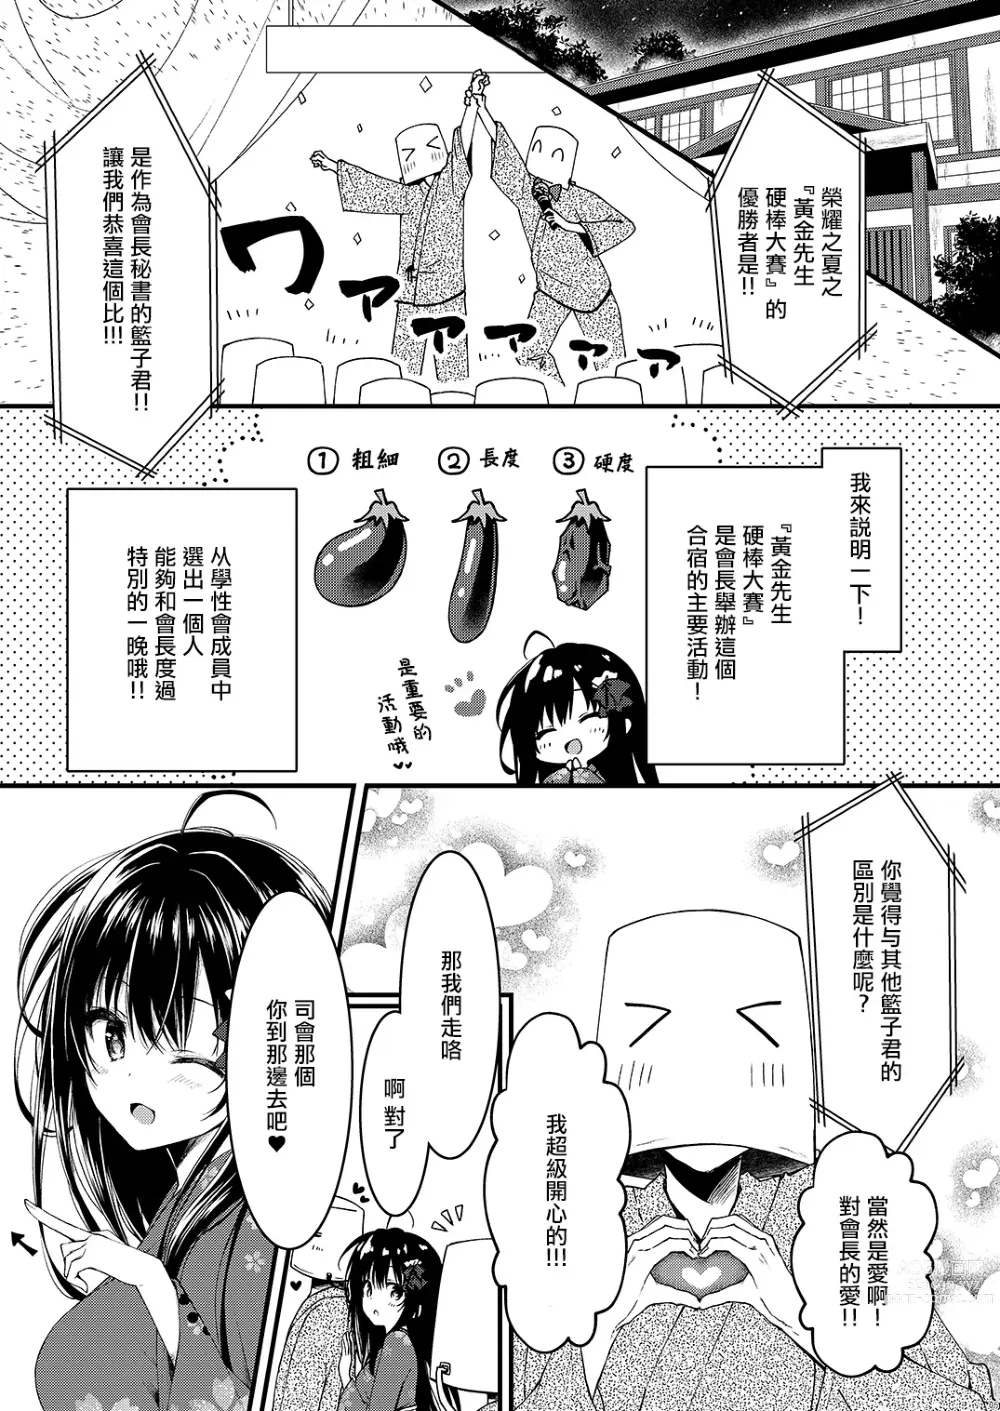 Page 5 of doujinshi Seikou Gakuen Seitokai in Natsugasshuku no Yoru